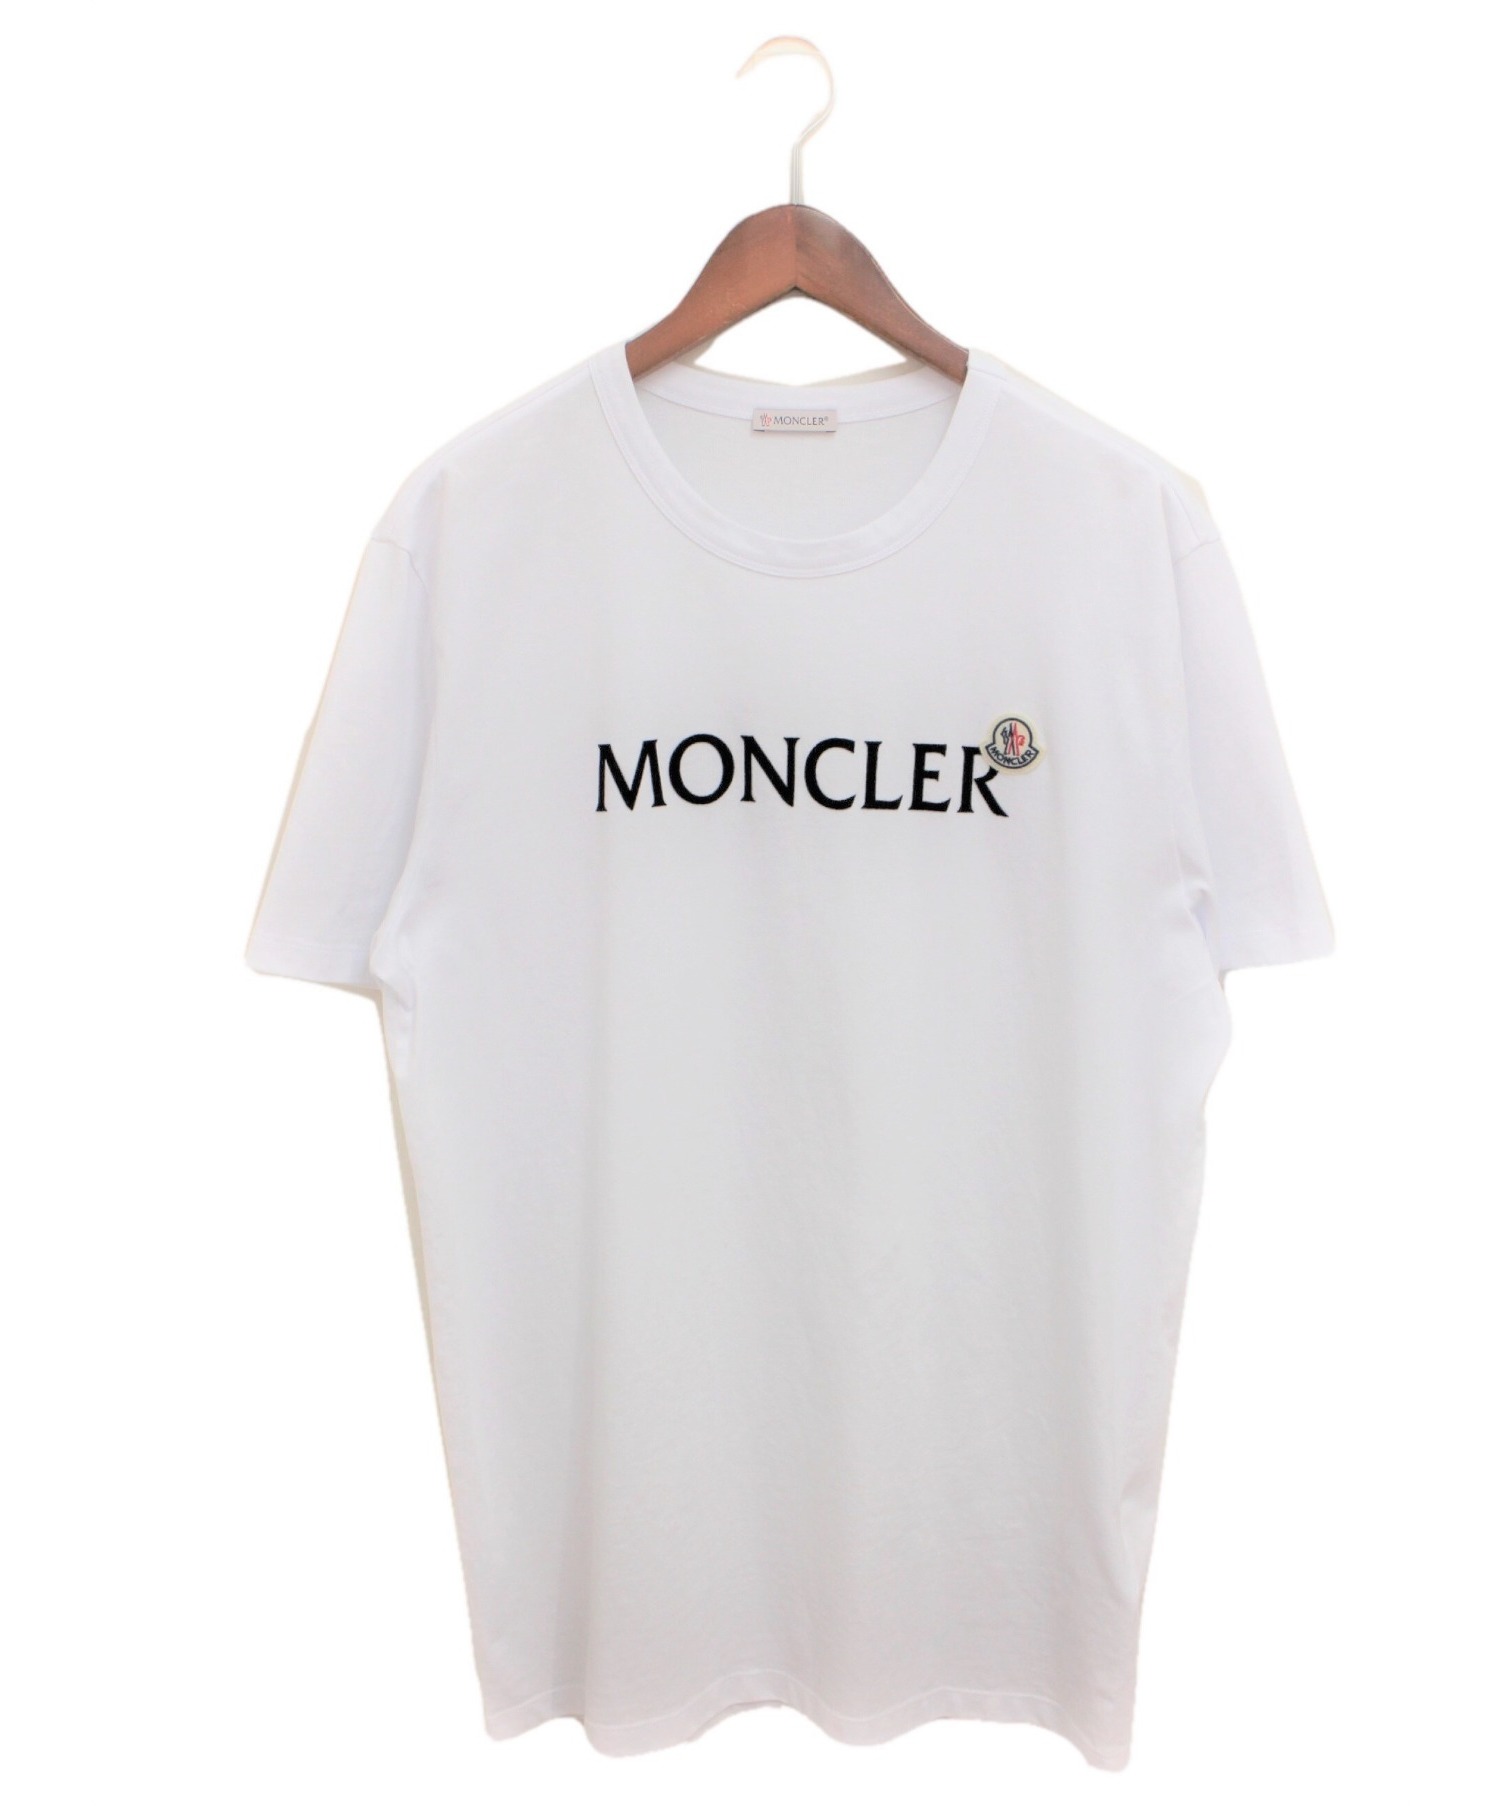 MONCLER (モンクレール) ロゴTシャツ ホワイト サイズ:L